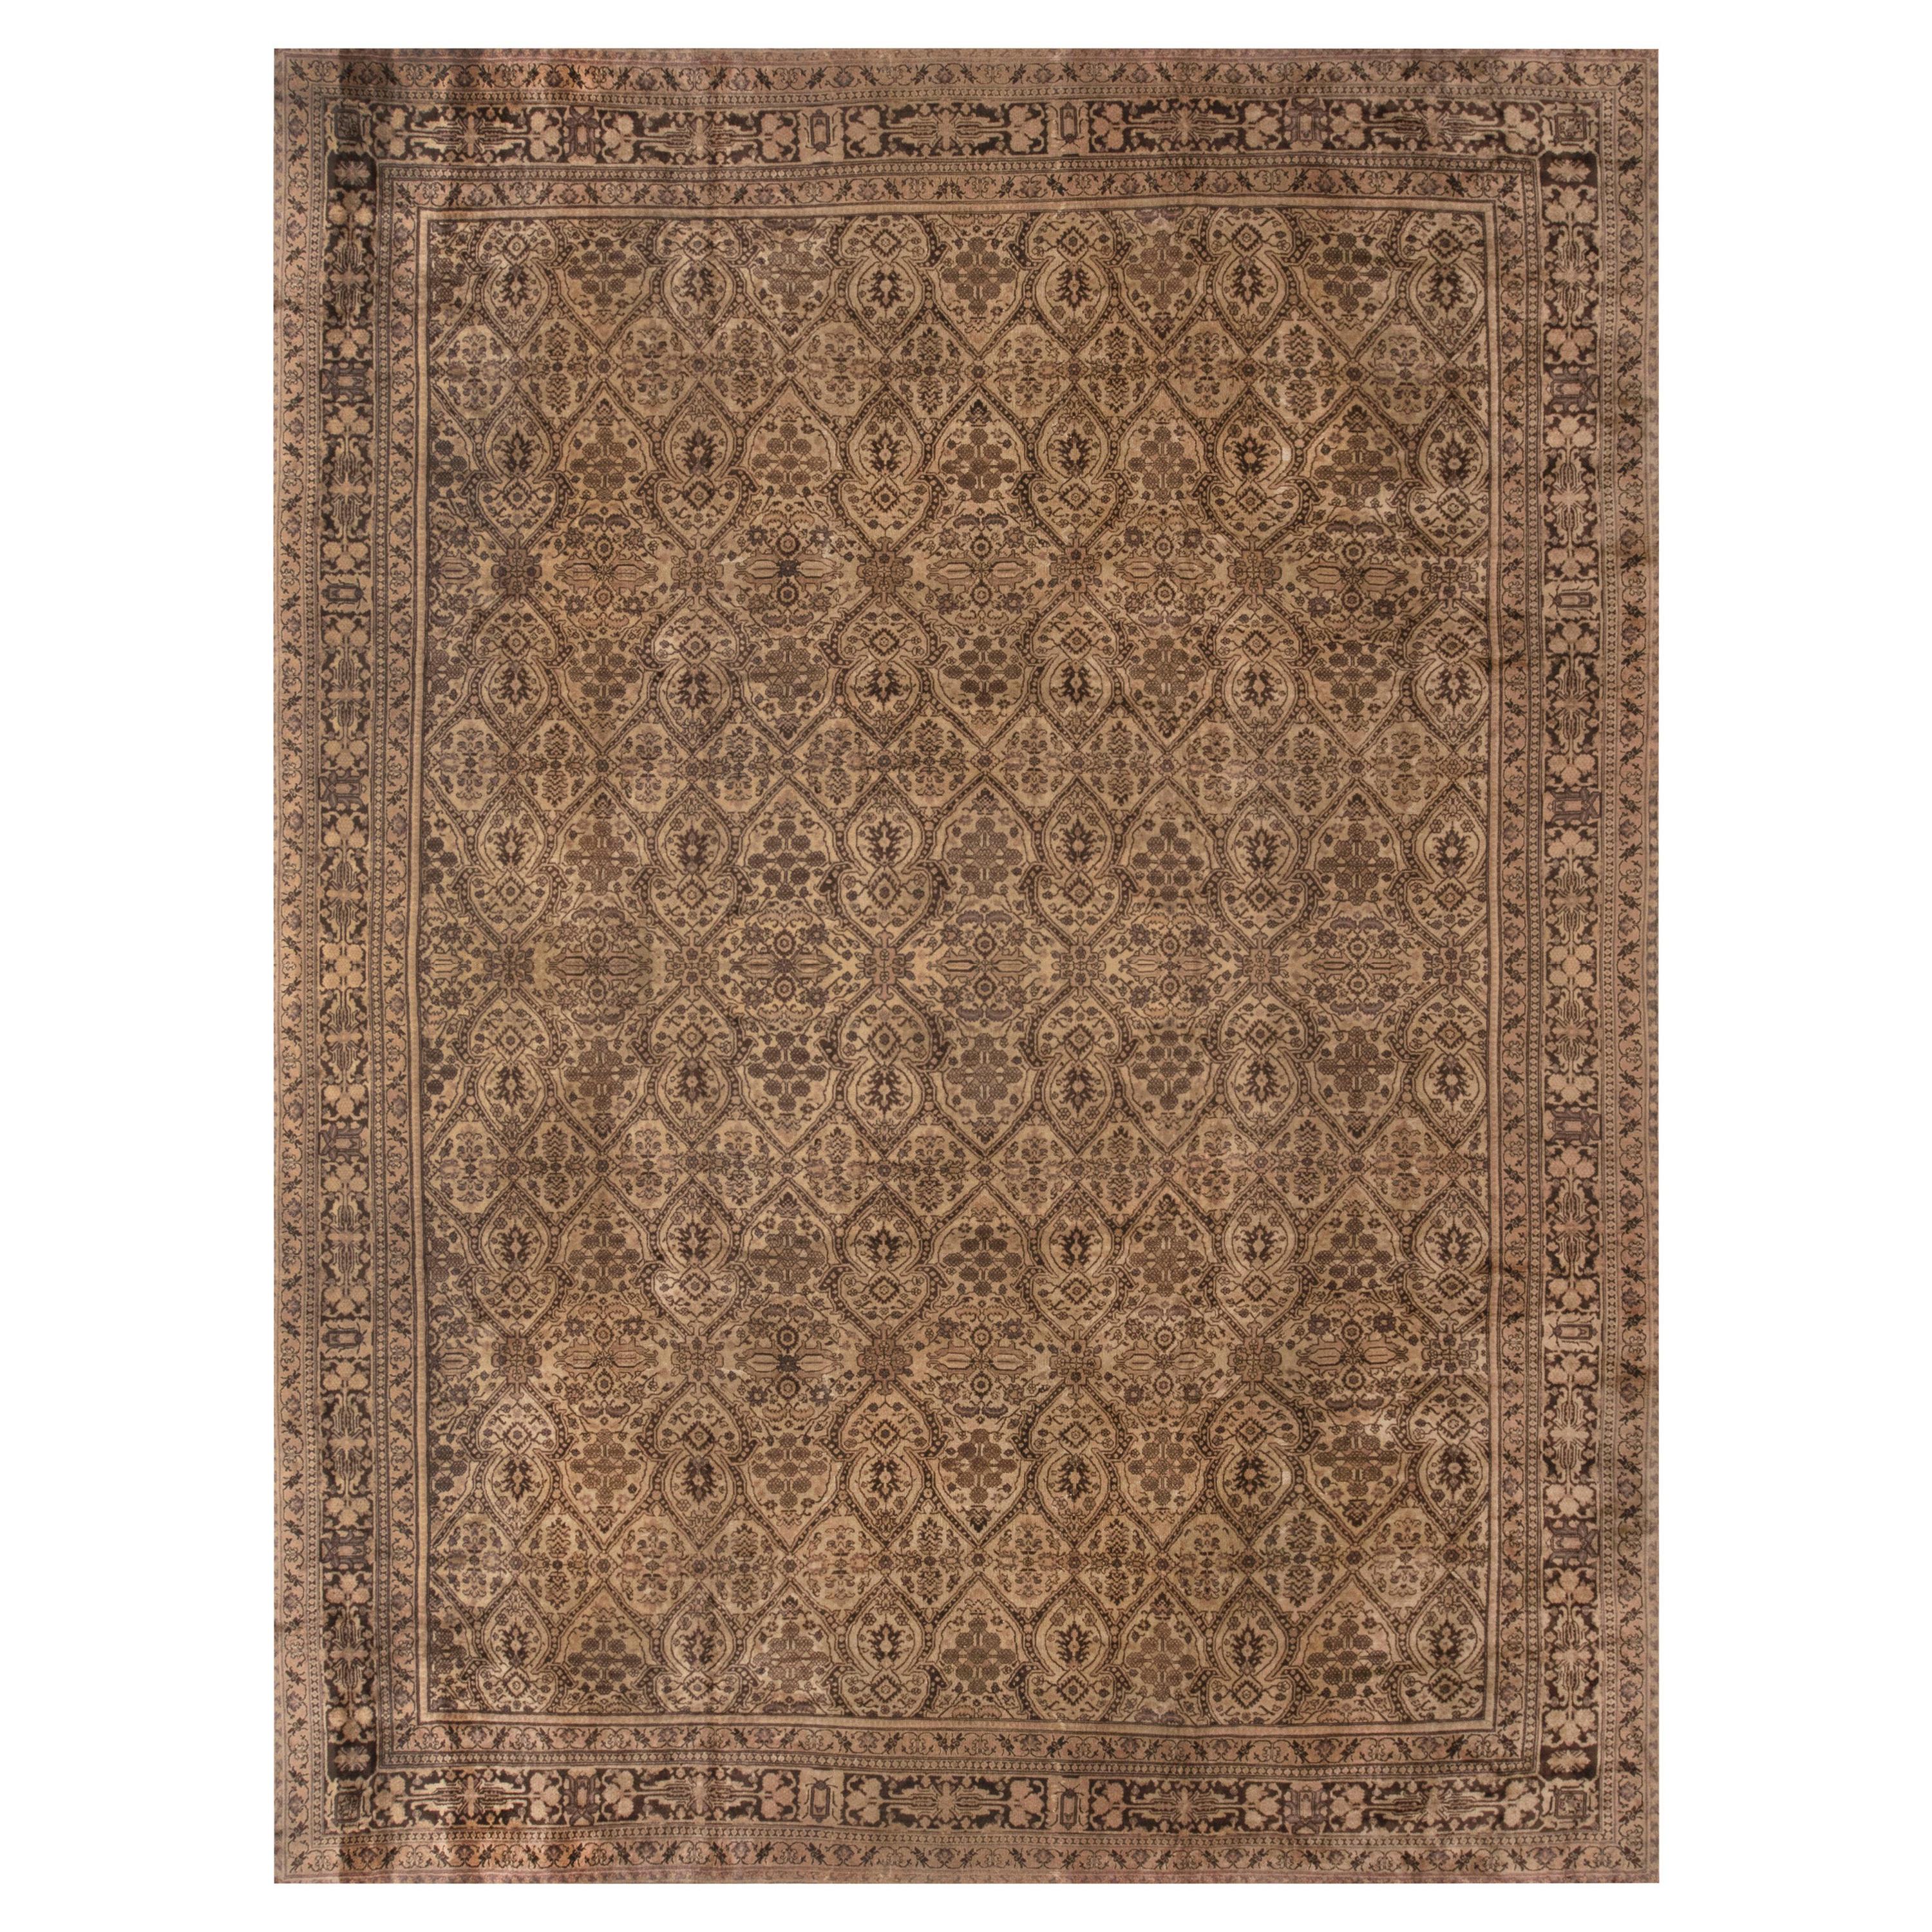 Antique Indian Amritsar Brown Carpet